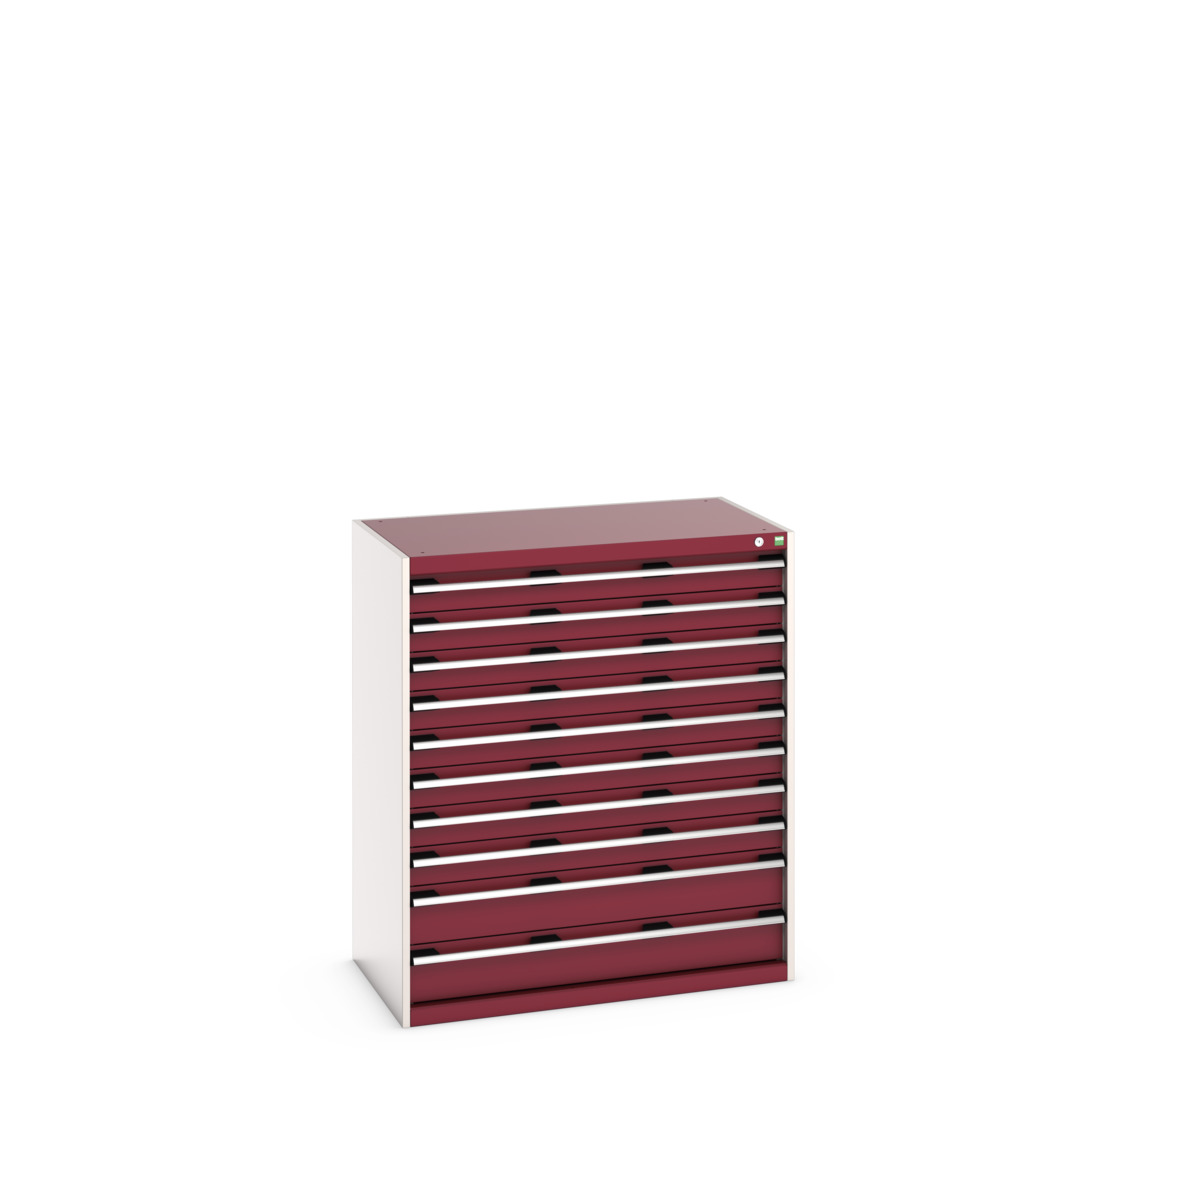 40021041.24V - cubio drawer cabinet